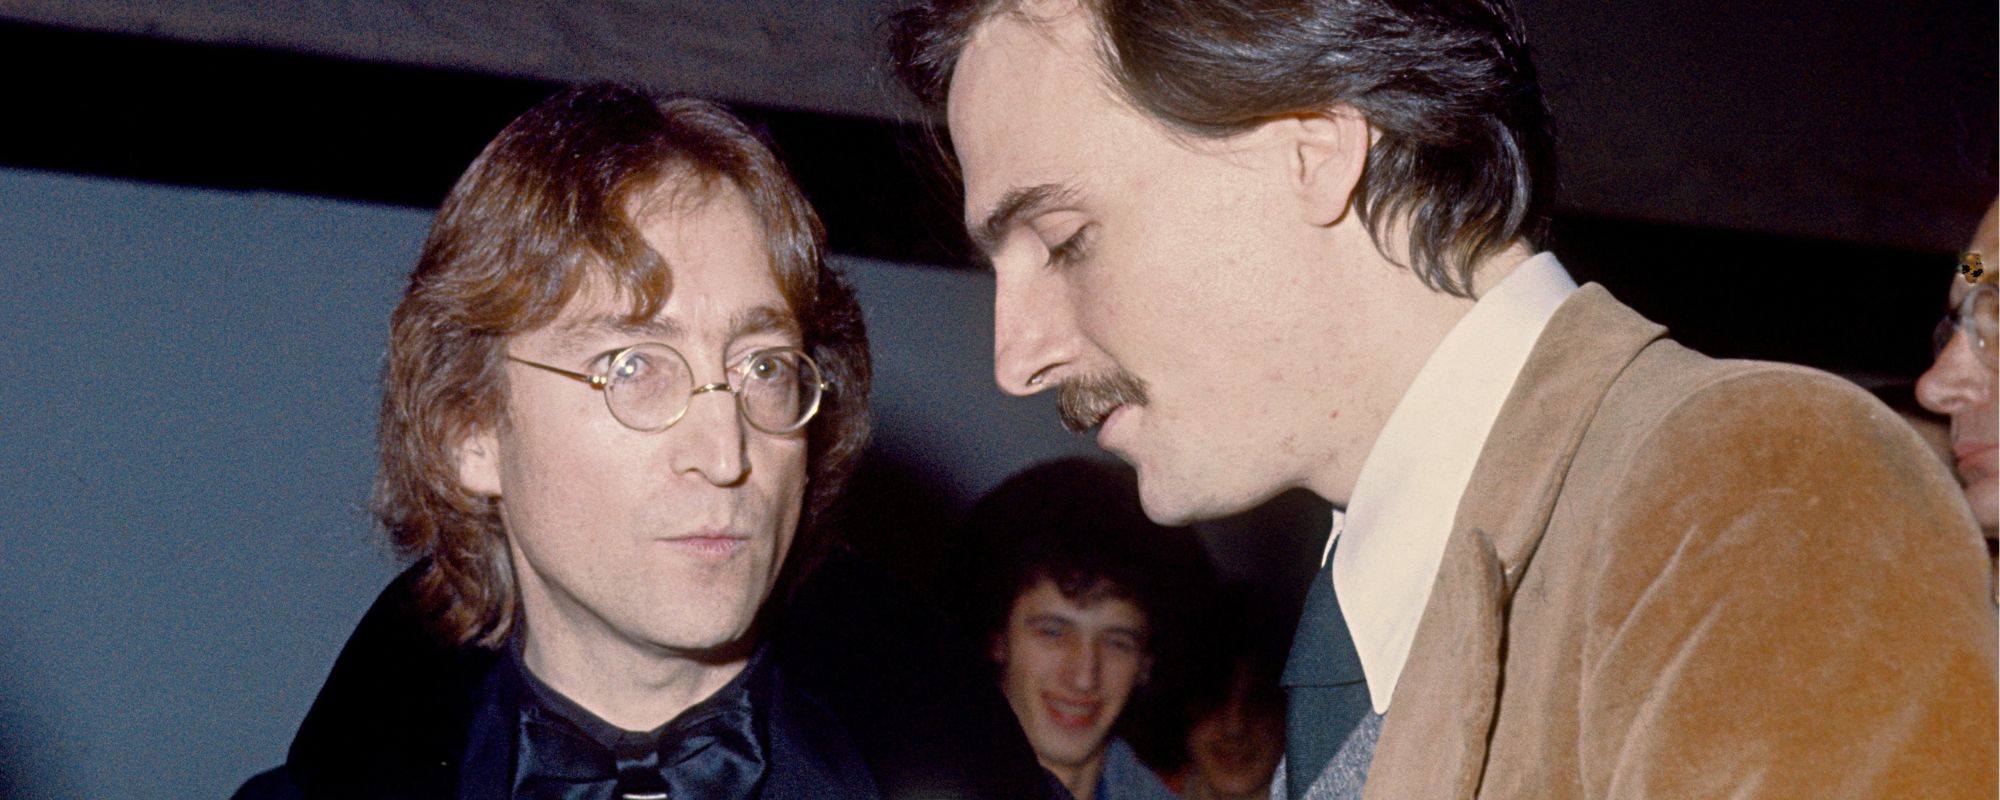 John Lennon’s Killer Confronted James Taylor The Day Before He Shot Lennon